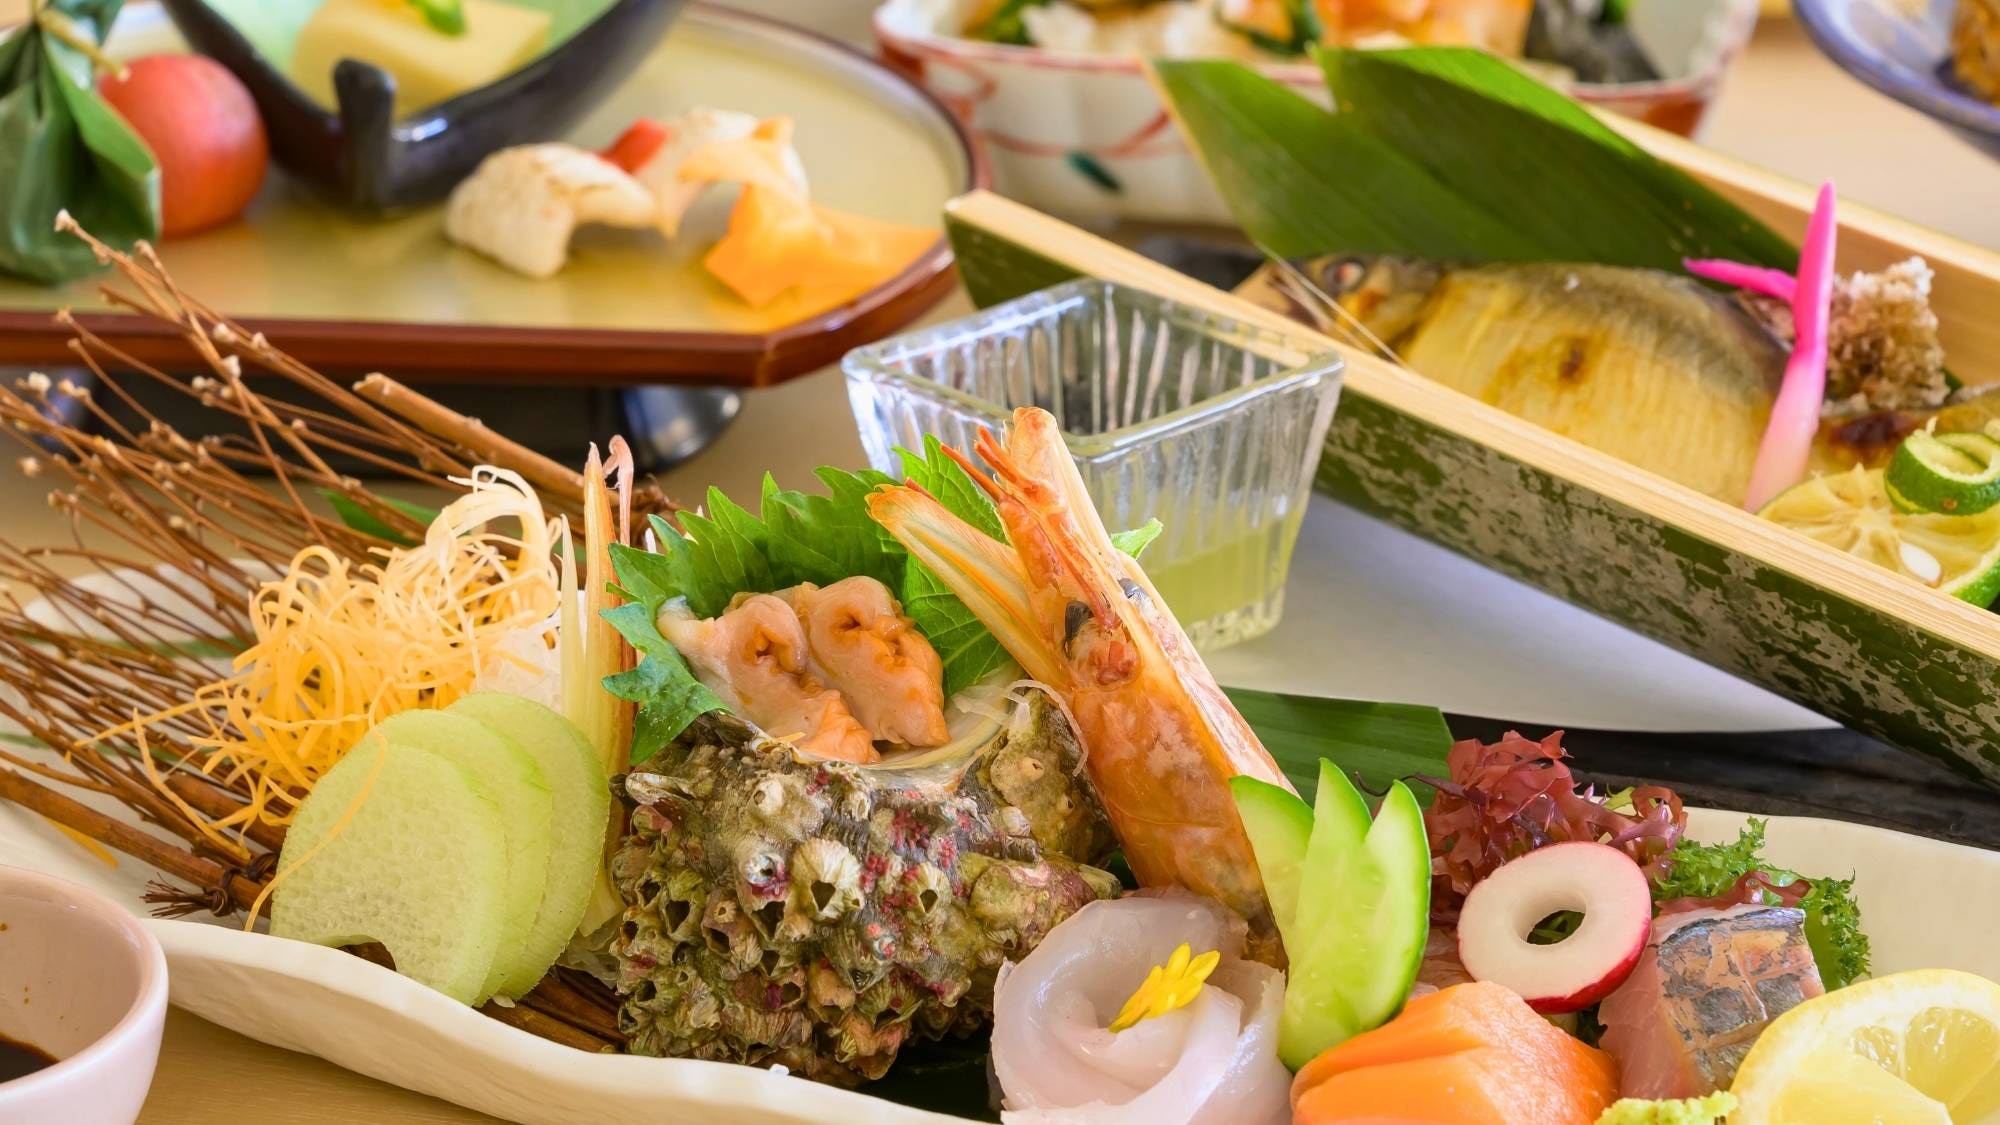 Nikmati sashimi musiman yang dibuat dari ikan segar yang ditangkap dari Laut Jepang.